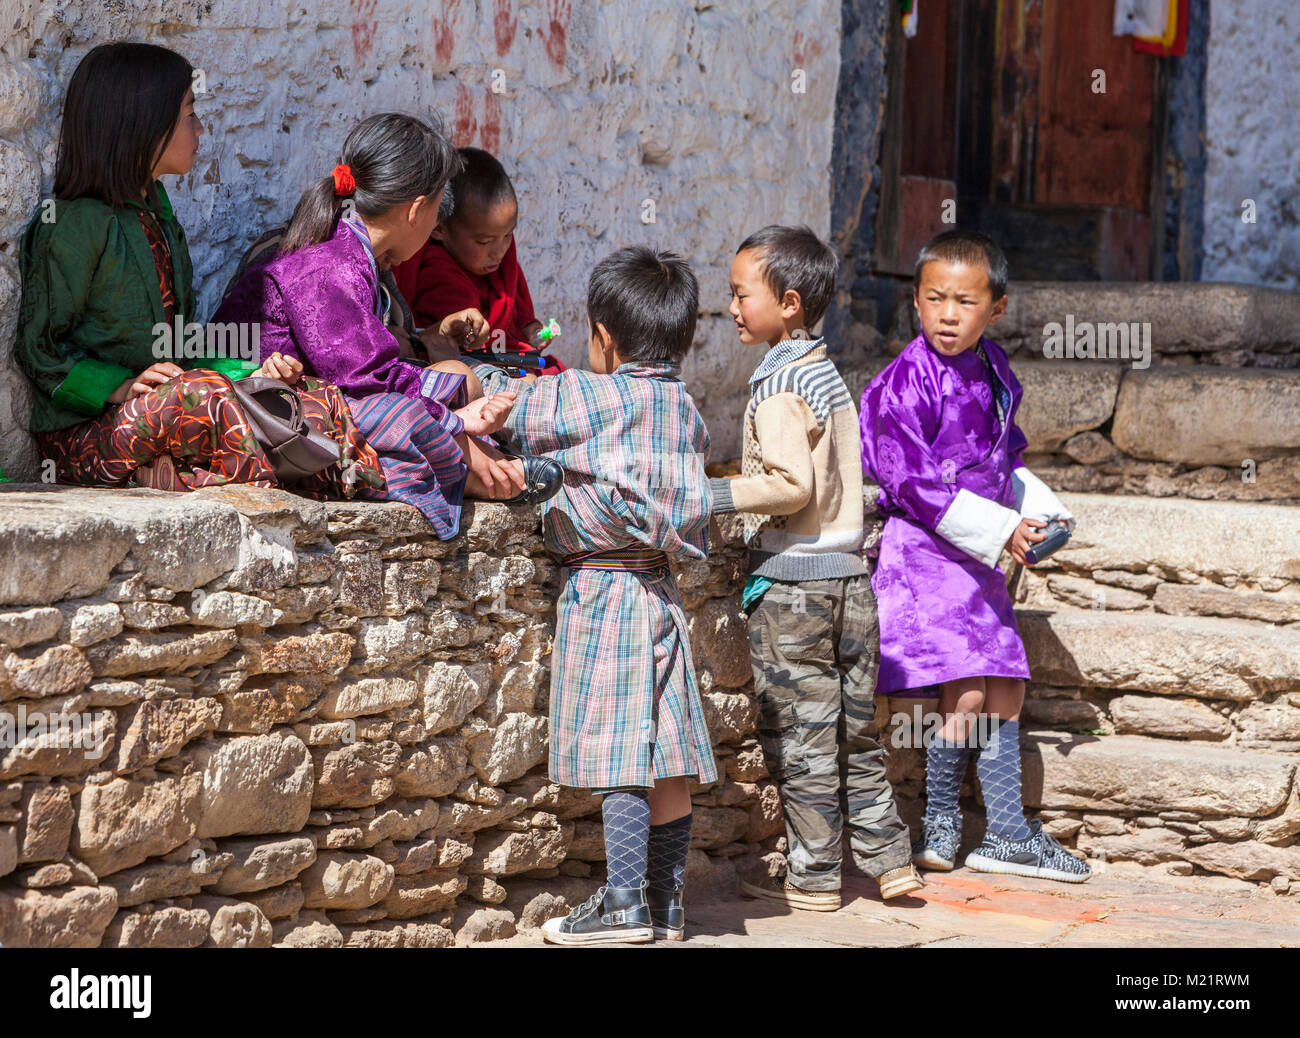 Prakhar Lhakhang, Bumthang, Bhoutan. Les jeunes enfants, l'un dans les vêtements de style occidental. Banque D'Images